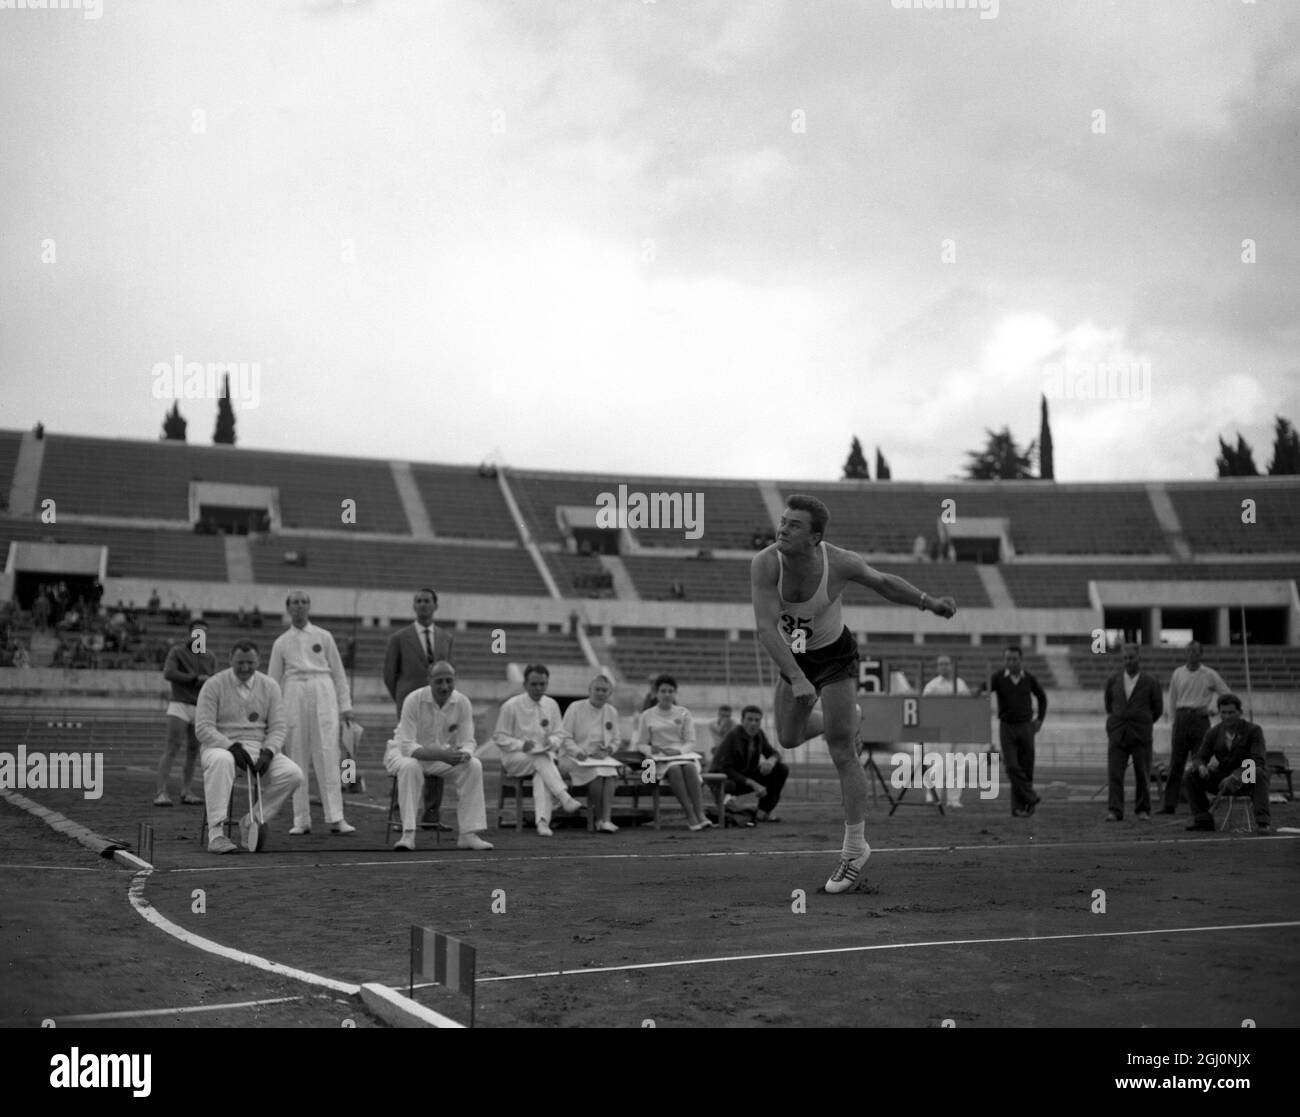 Rom ; die Speerveranstaltung in Rom am Sonntag umfasste Konkurrenten aus vielen Ländern , darunter Polens Janusz Sidlo , der zweite in der Speerveranstaltung kam . 13. Oktober 1959 Stockfoto